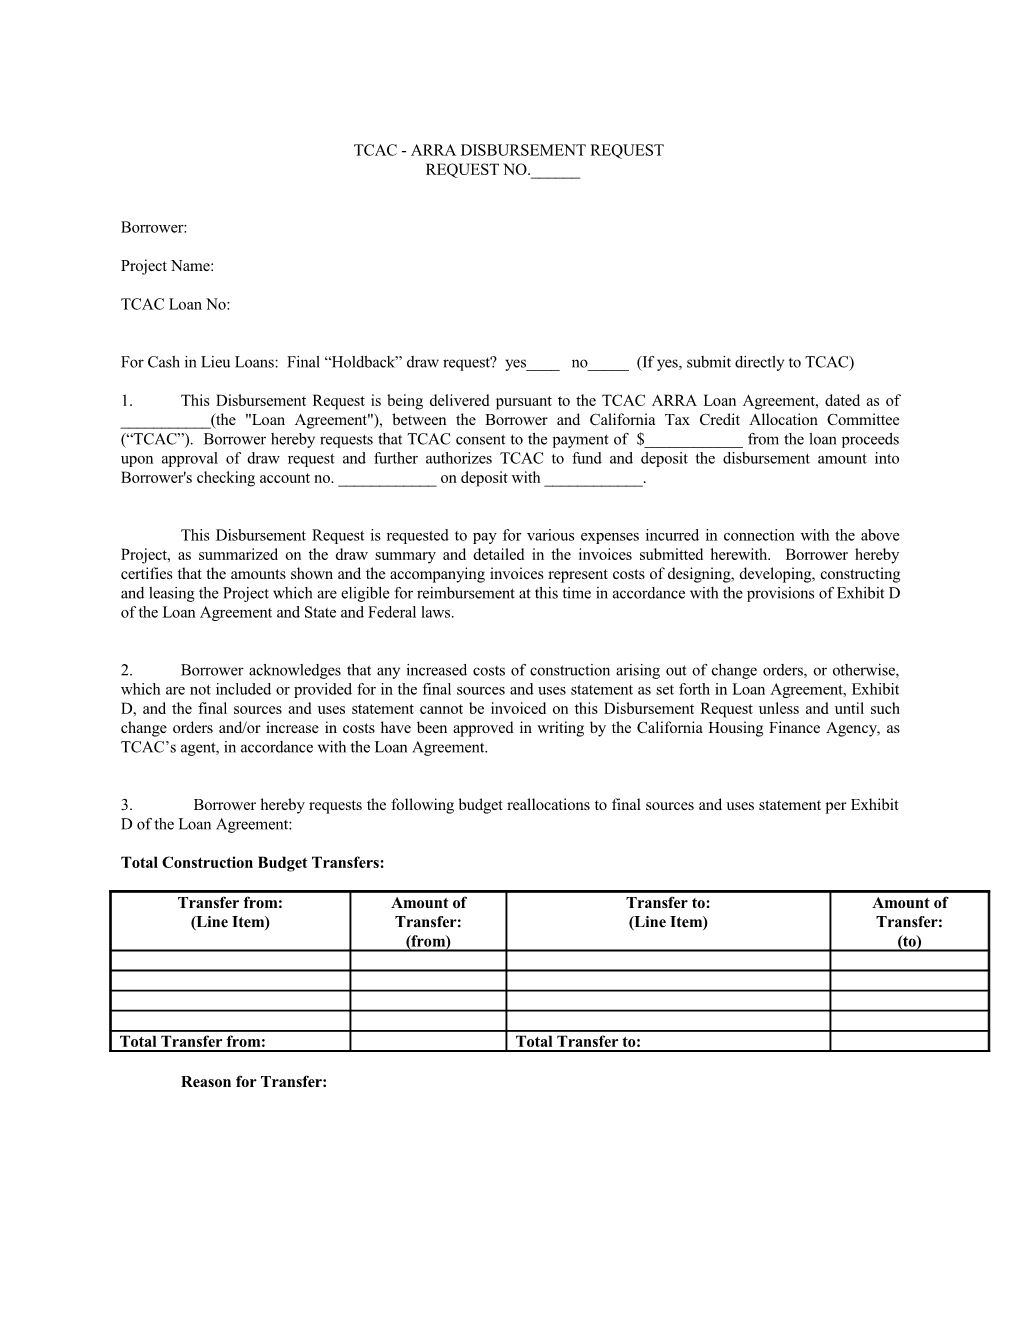 TCAC - ARRA Disbursement Request